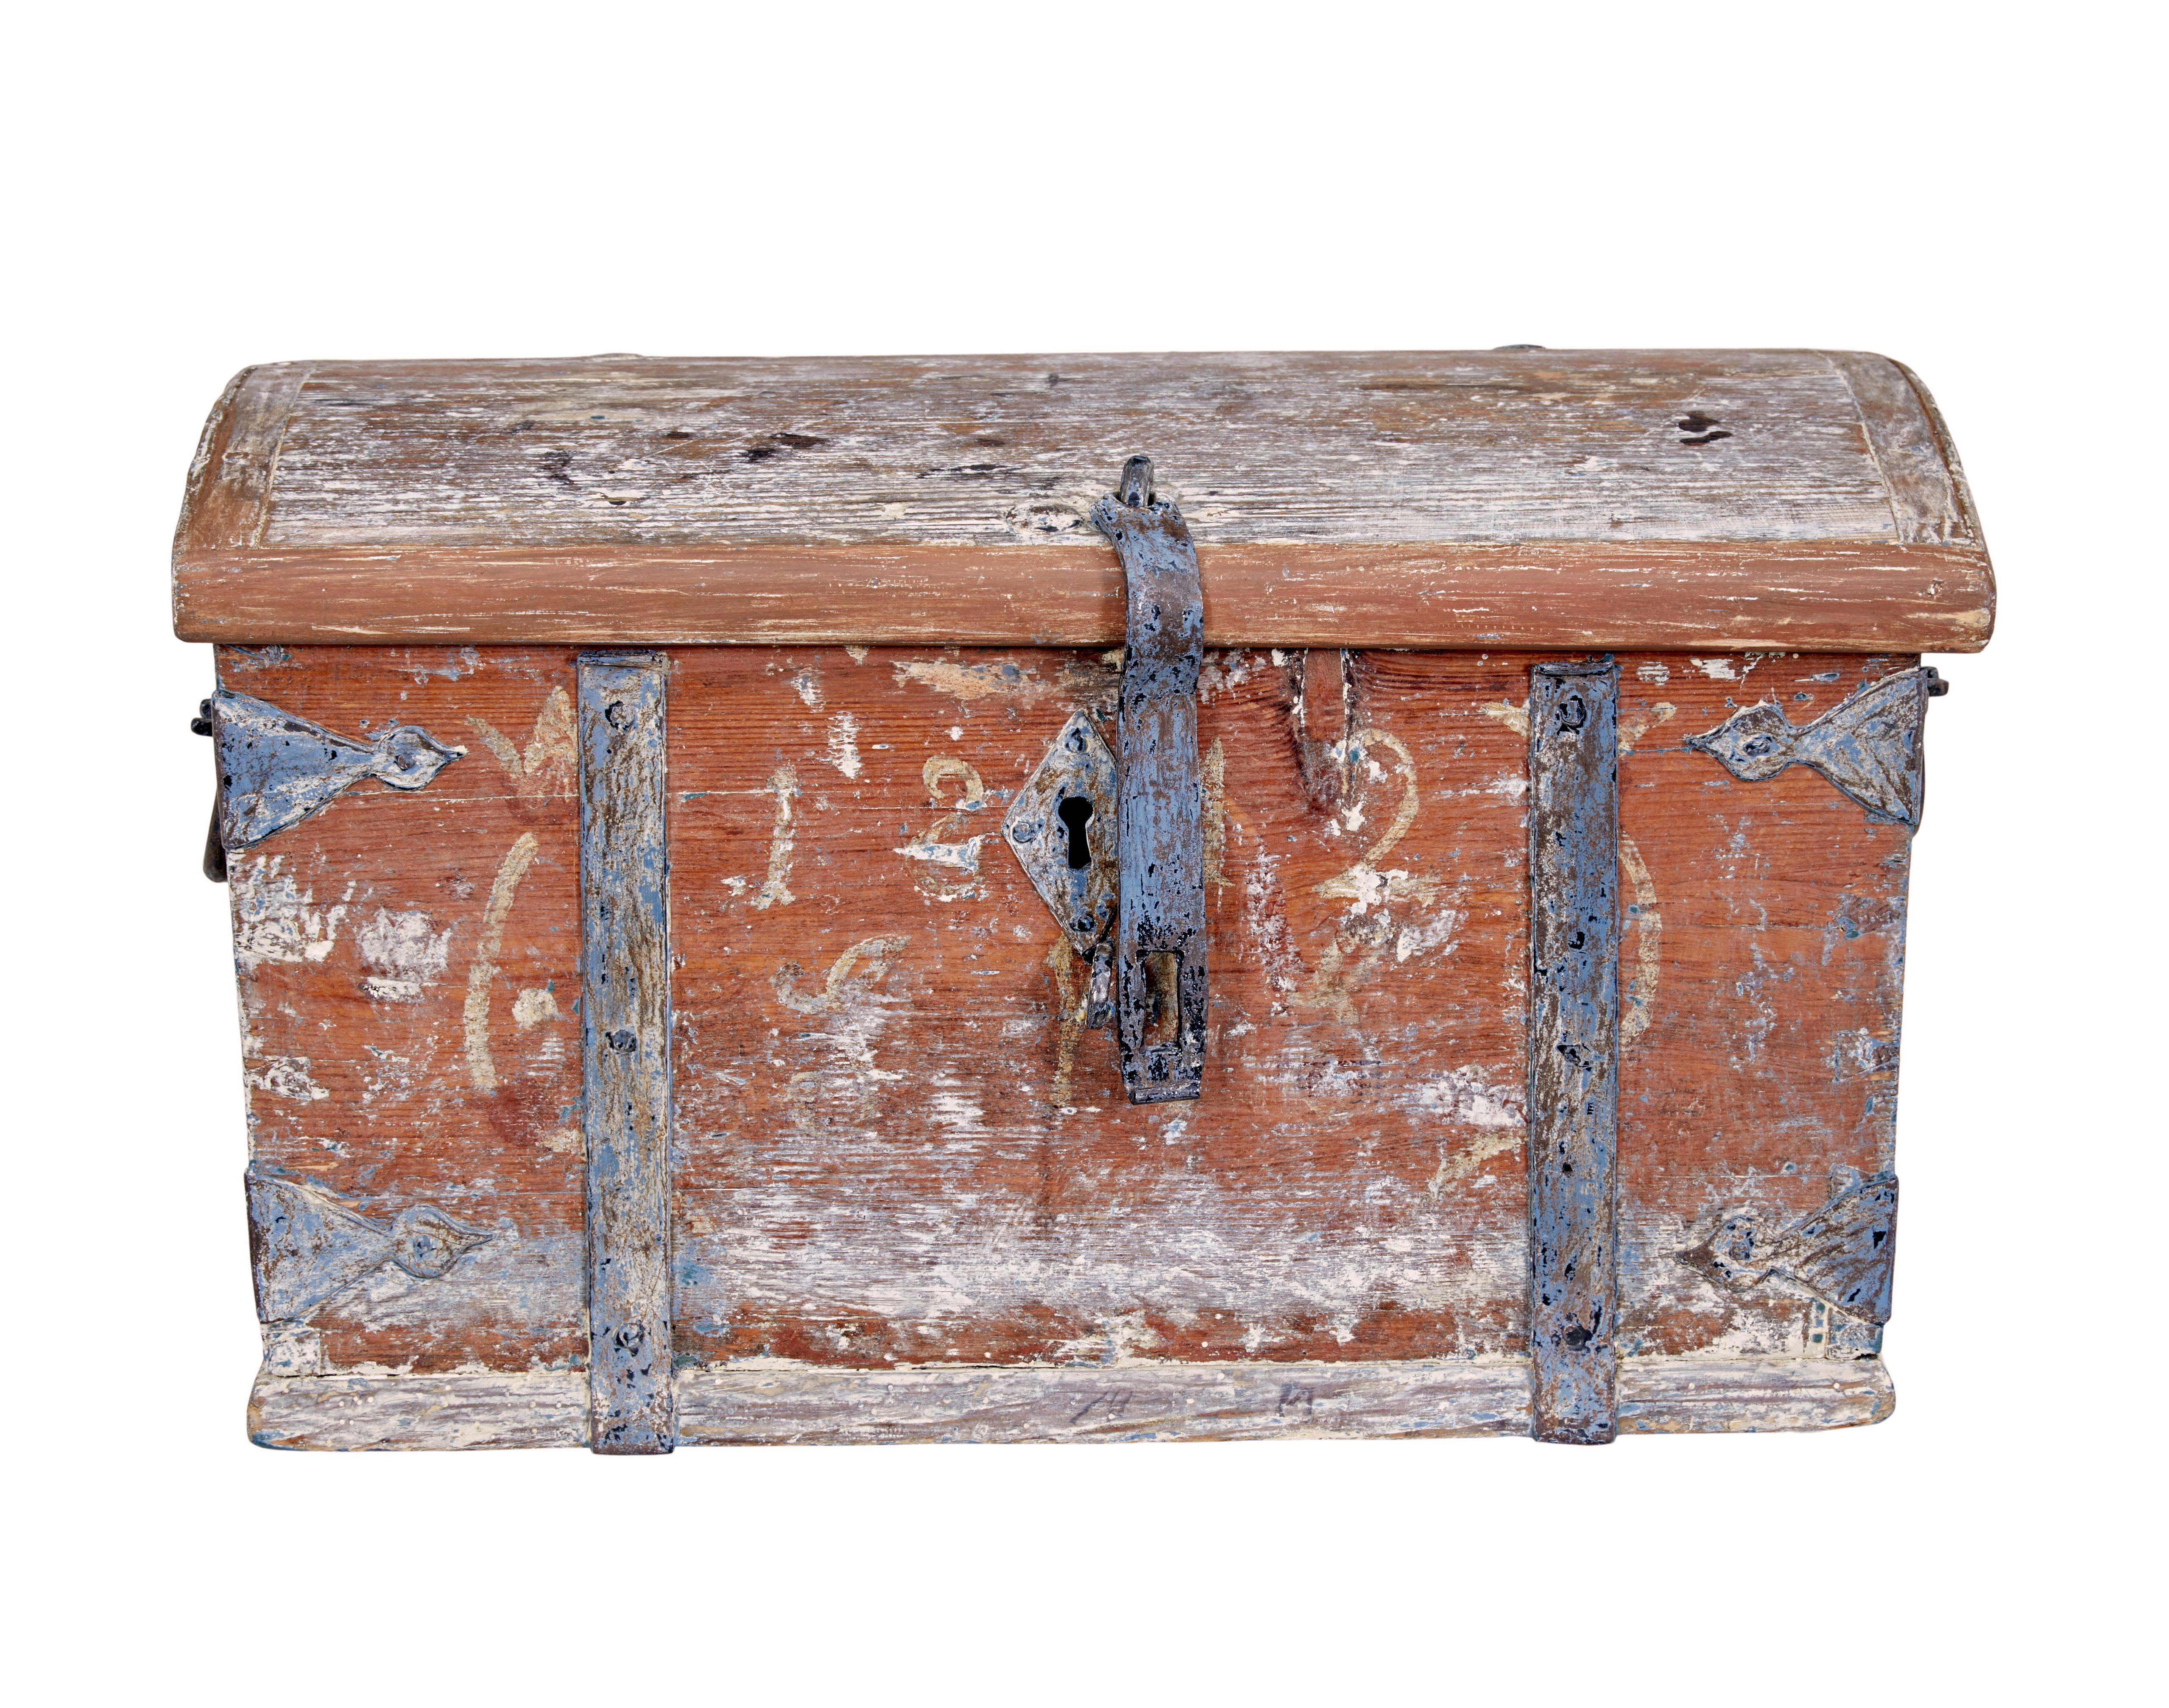 Kleiner, Mitte des 19. Jahrhunderts bemalter Kasten aus schwedischer Kiefer, um 1842.

Schöne kleine skandinavische starke Box, mit abgekratzten zurück Farbe zu offenbaren Original präsentiert.  Die Jahreszahl 1842 ist noch zu erahnen, die